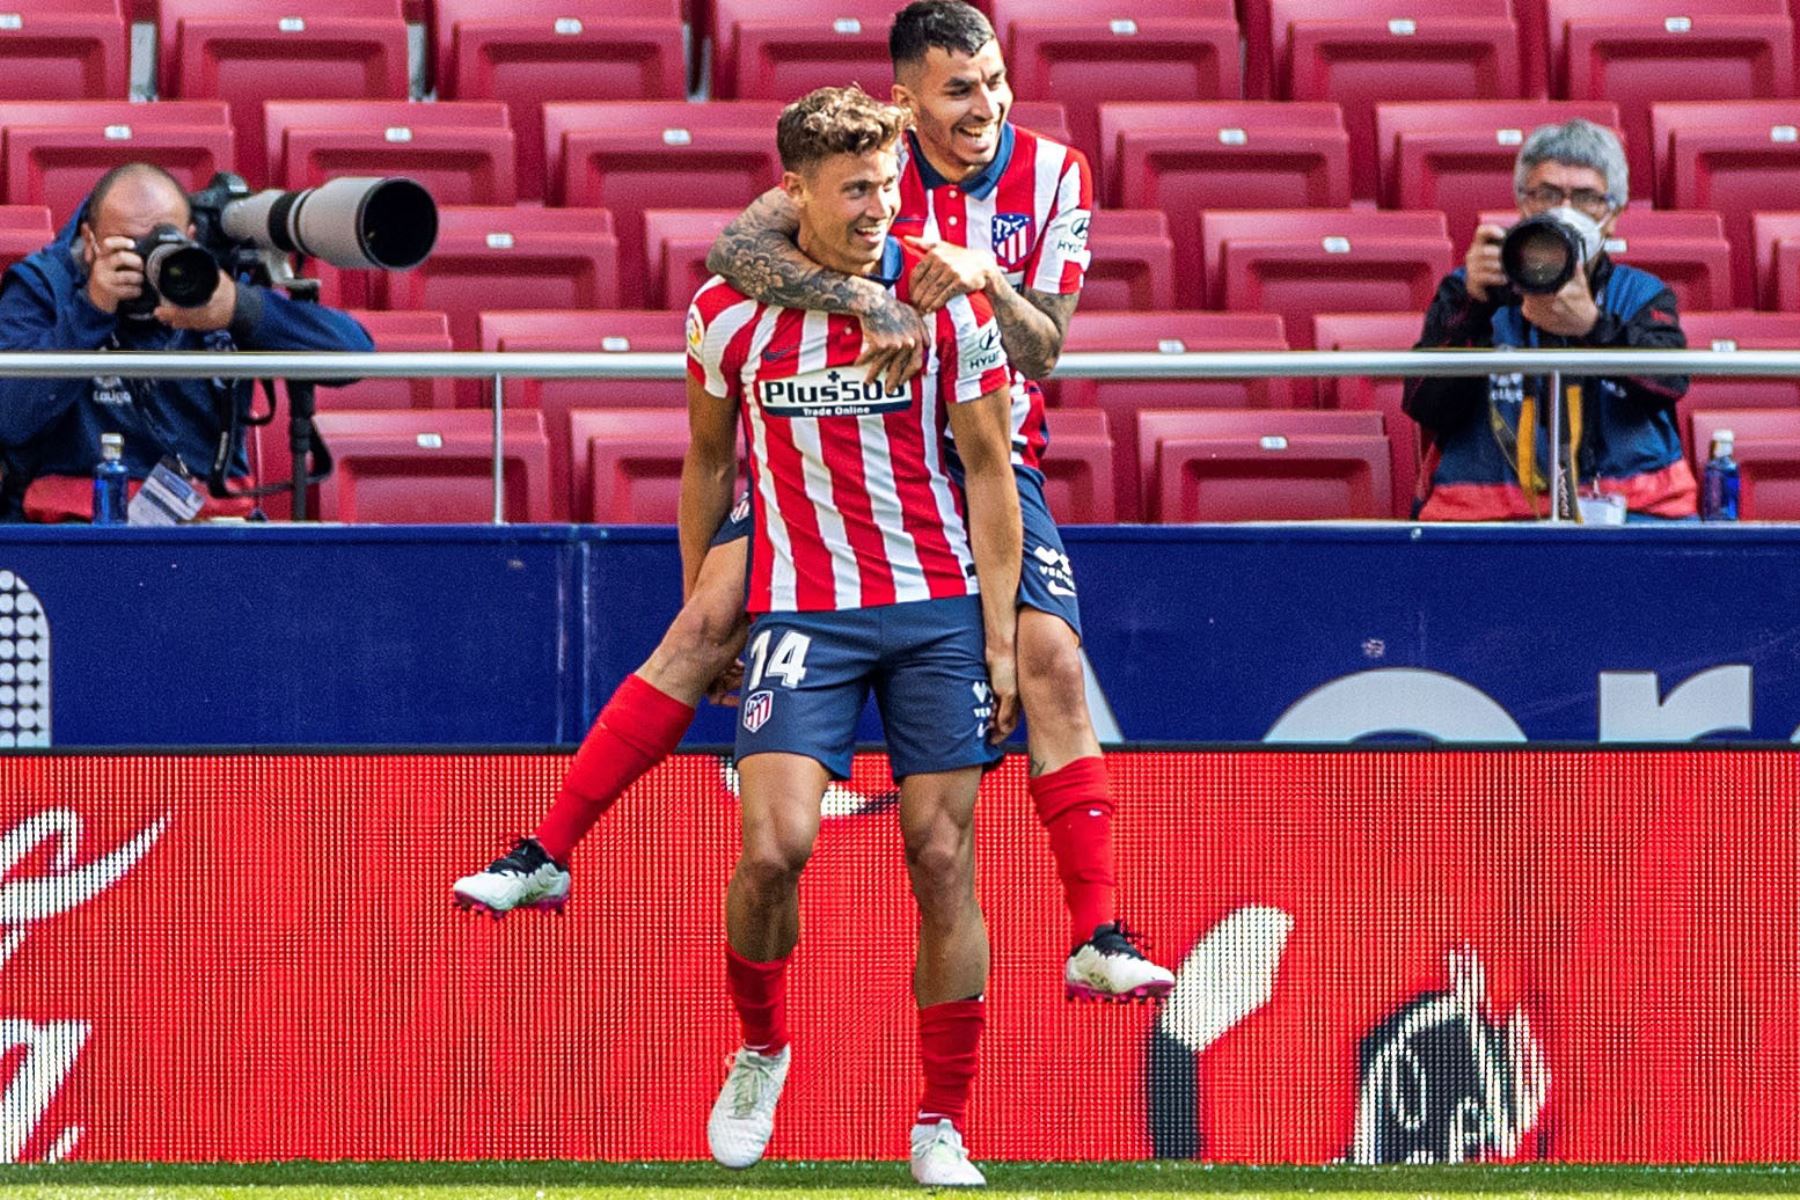 El centrocampista del Atlético de Madrid Marcos Llorente celebra con su compañero Angel Correa su gol ante el Eibar, cuarto del equipo, durante el partido de La Liga que el Atlético de Madrid y el Eibar.
Foto: EFE